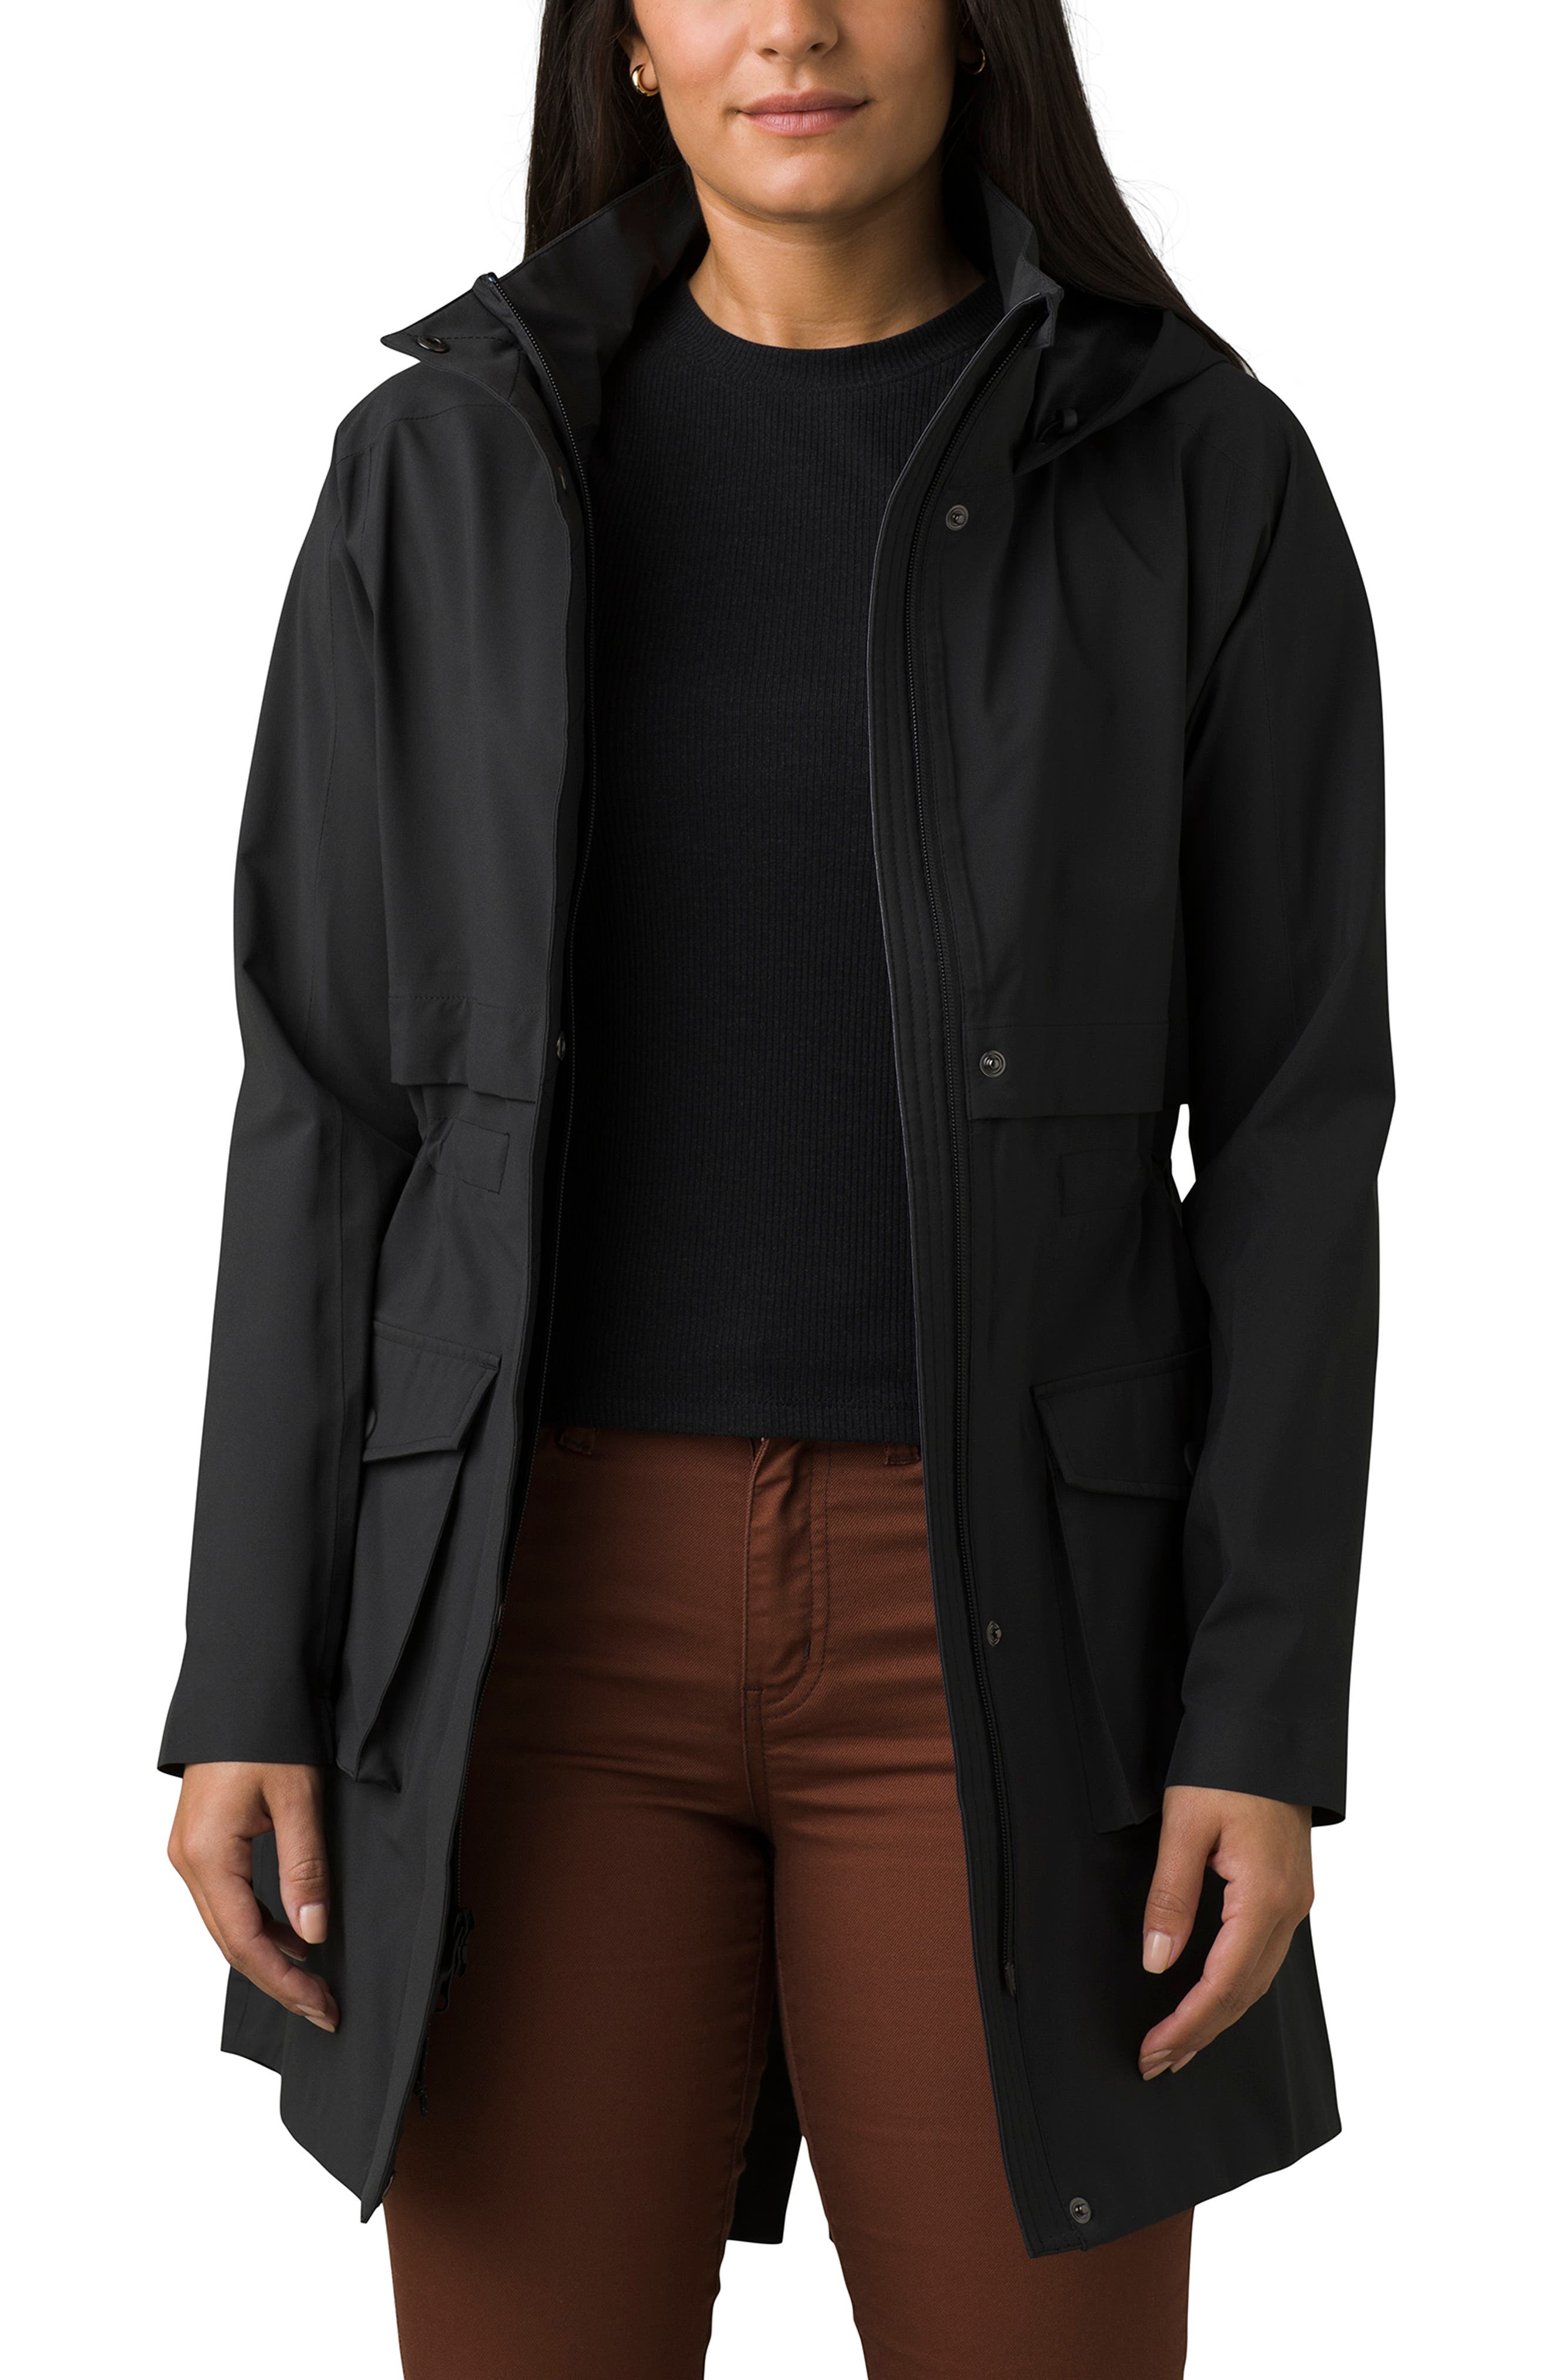 NEW prAna Women's Evelina Jacket Coat X-Large Black Winter Warm 